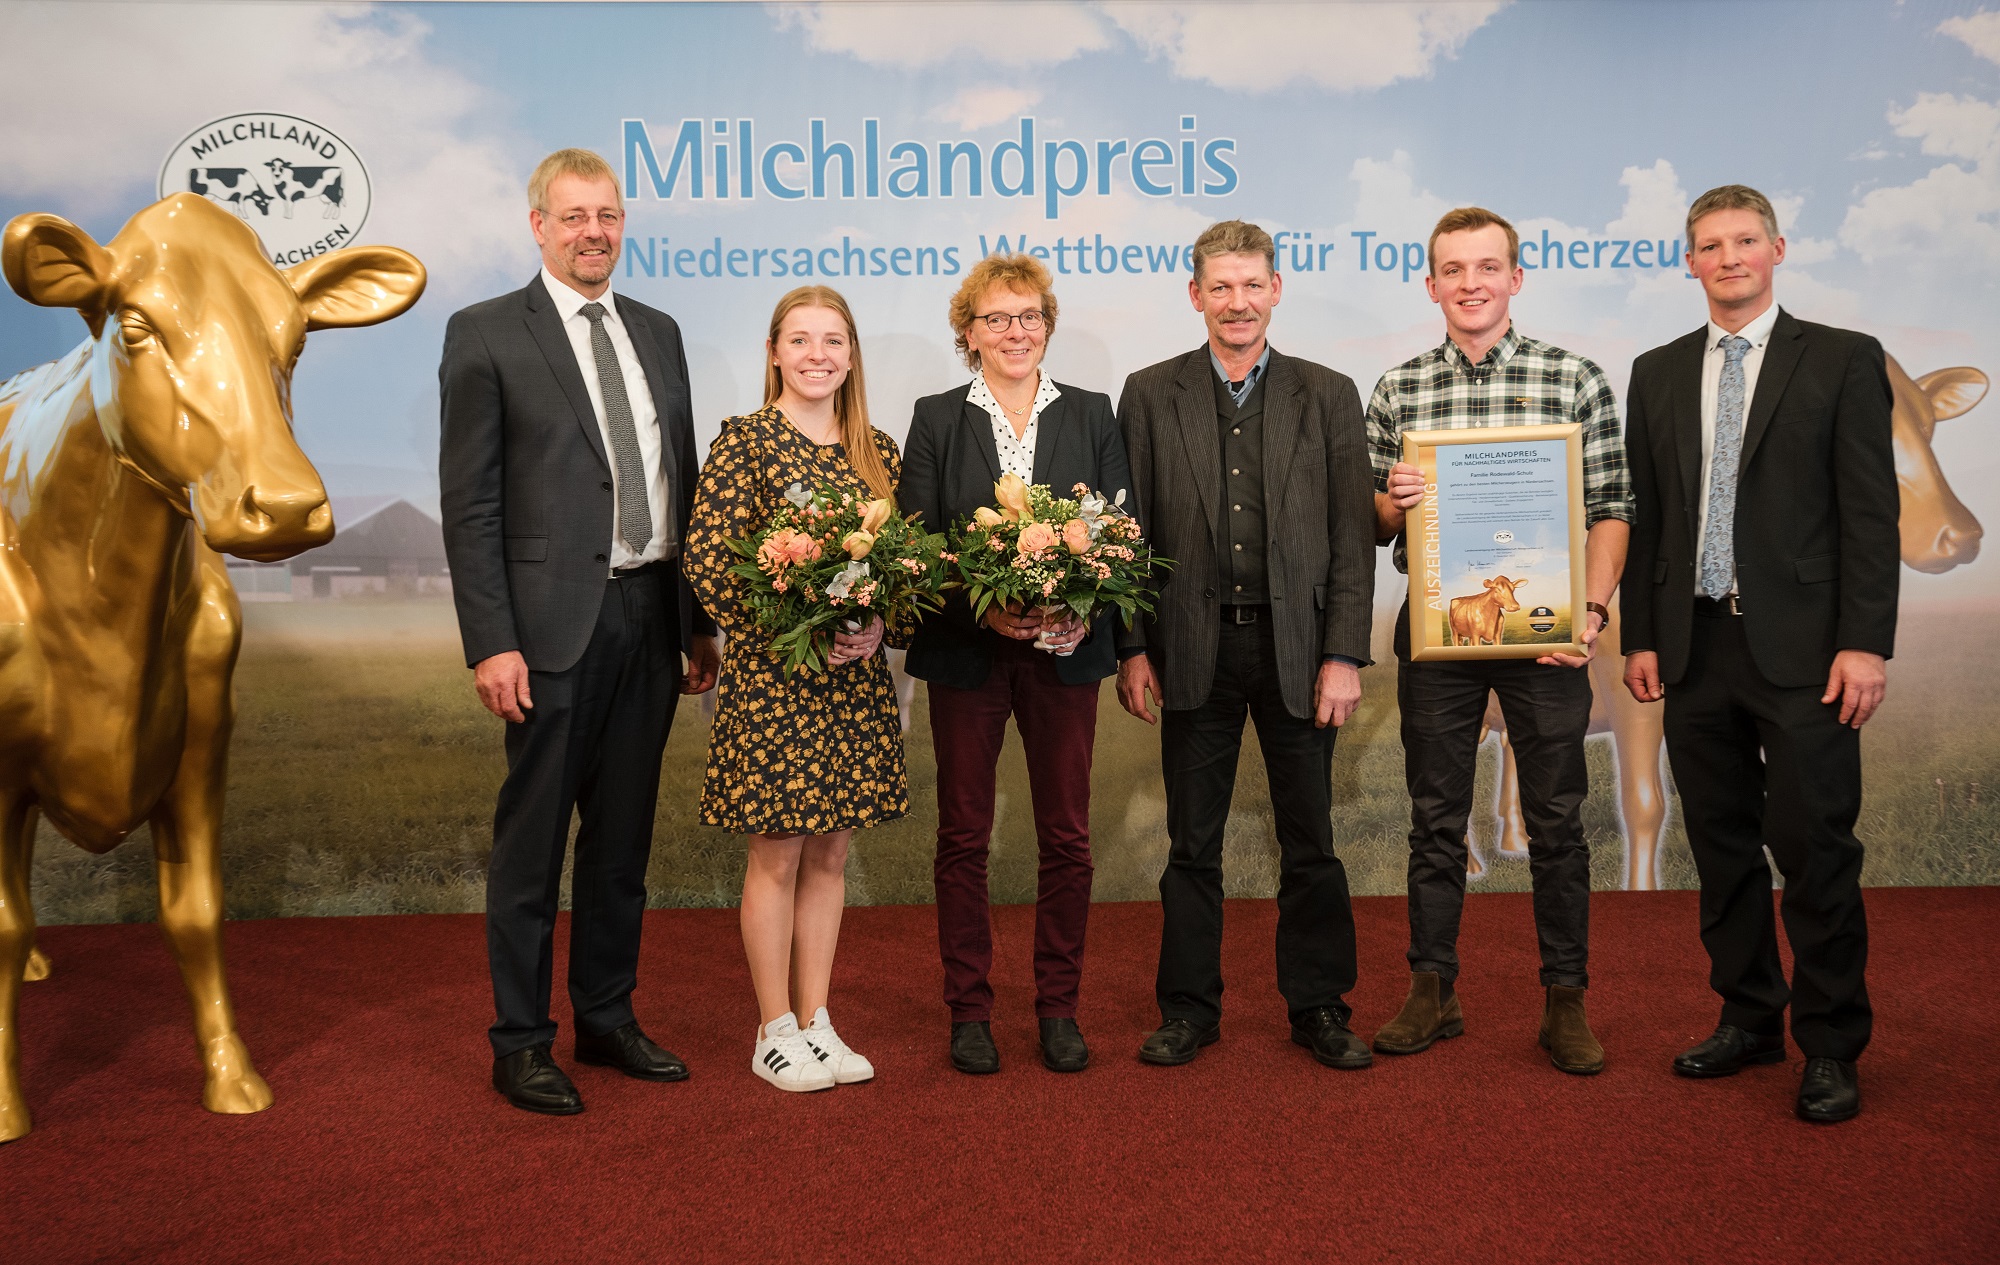 Milchlandpreis 2023: Top 11 Rodewald-Schulz